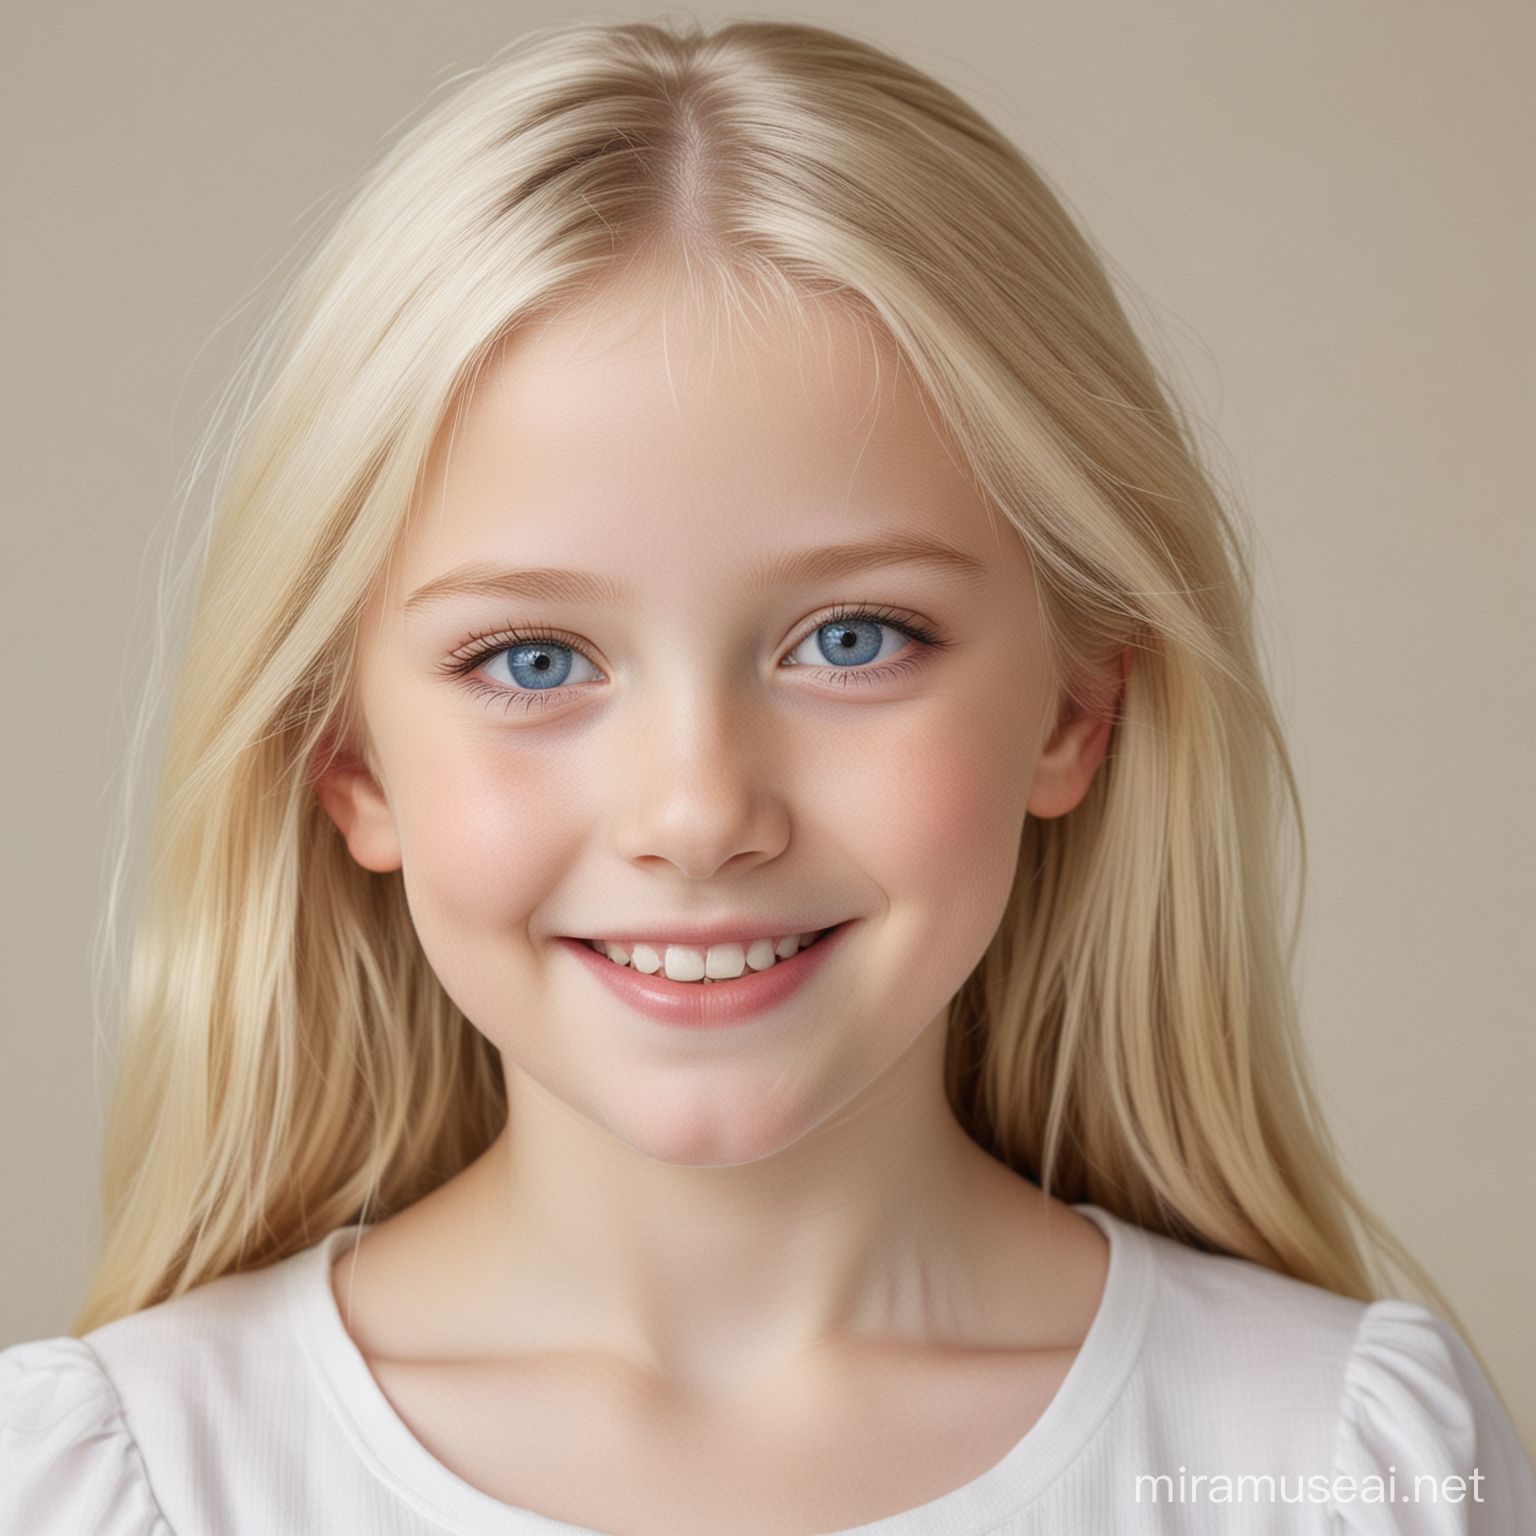 1girl, 8 years old, blonde hair, very pale skin, blue eyes, standing, smiling